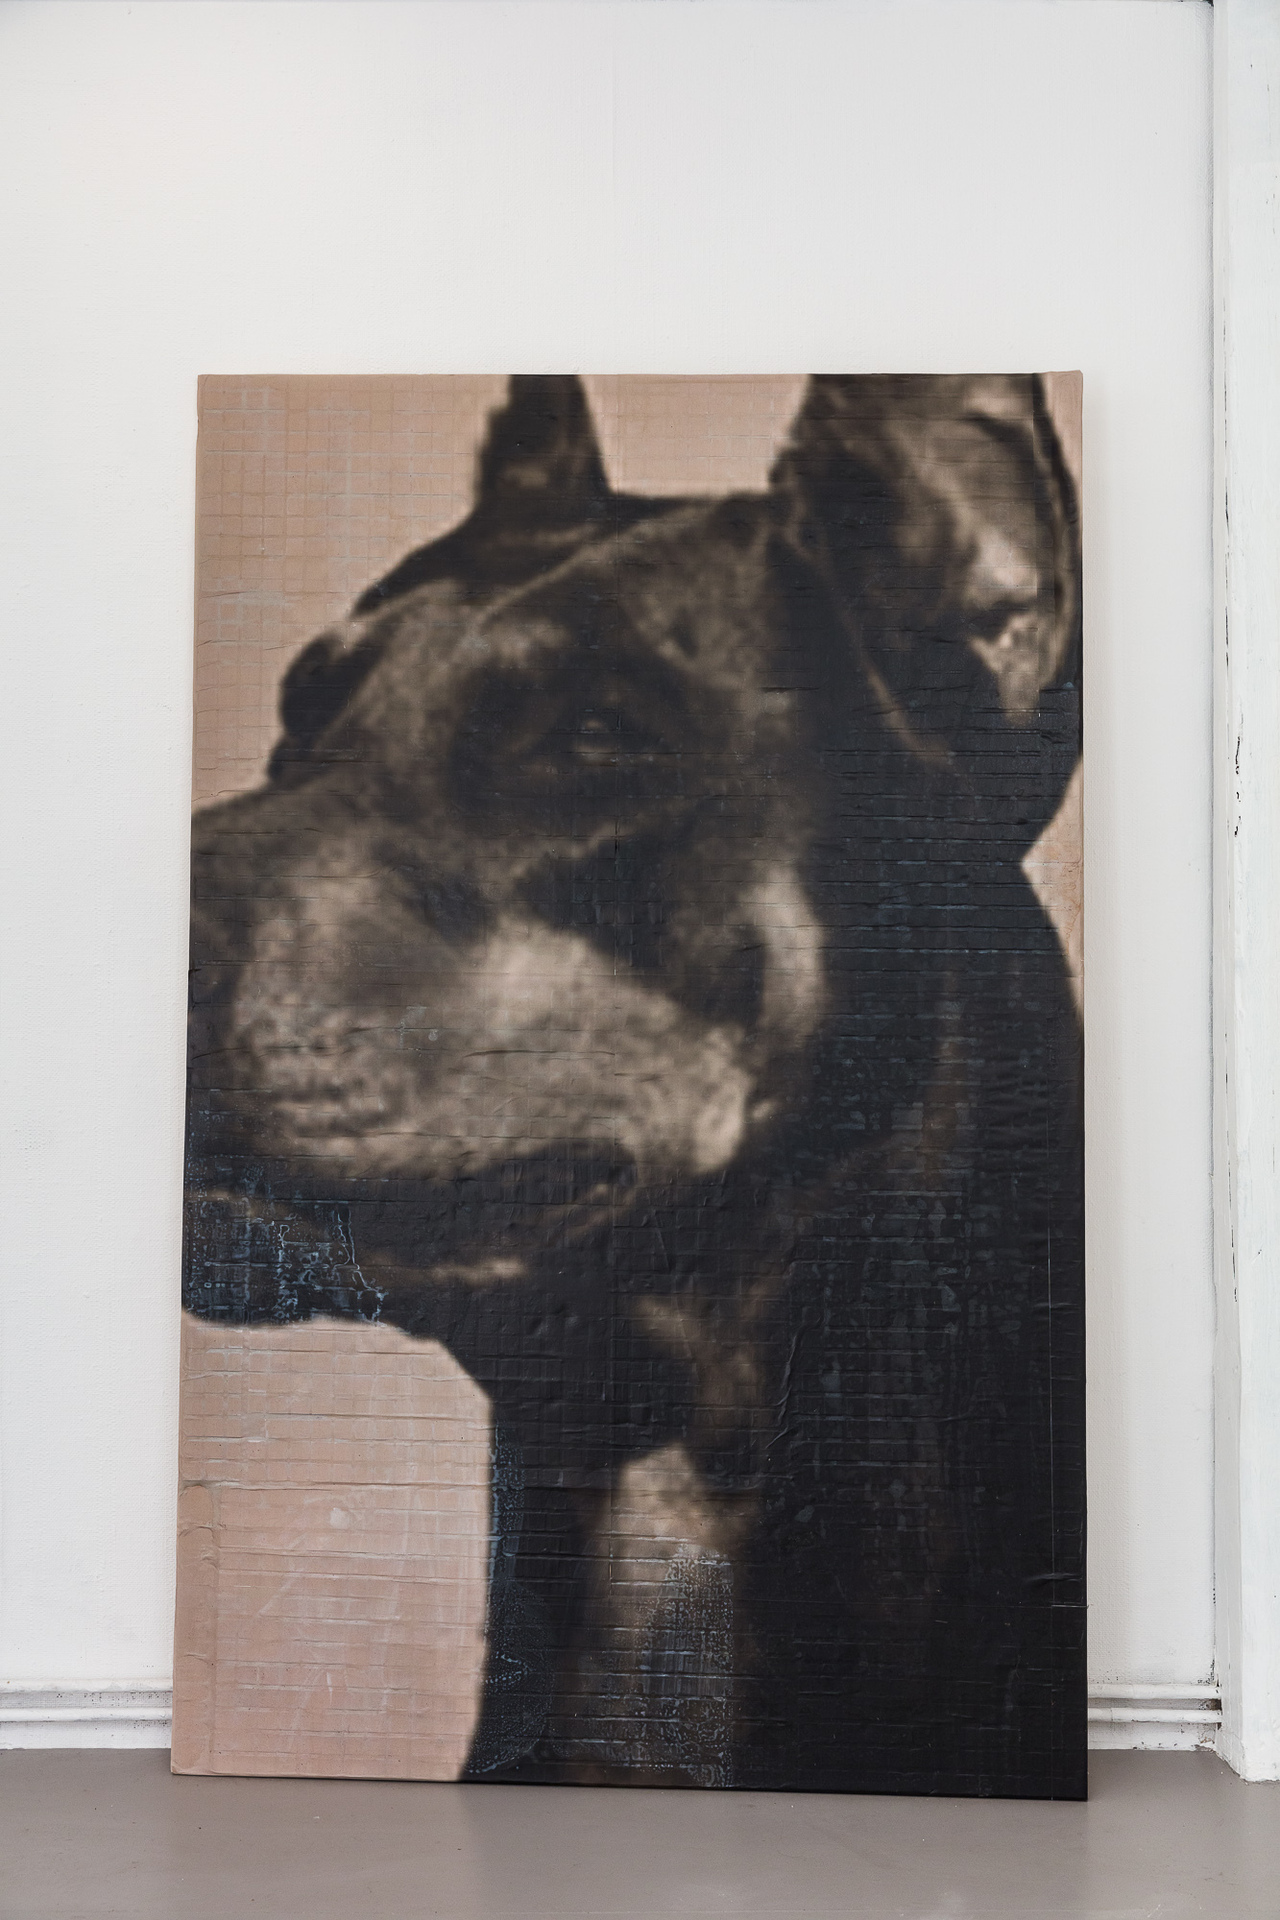 3Schirin Charlot, Hunde, 2020, inkjet print & tile relief 196 x 125 cm